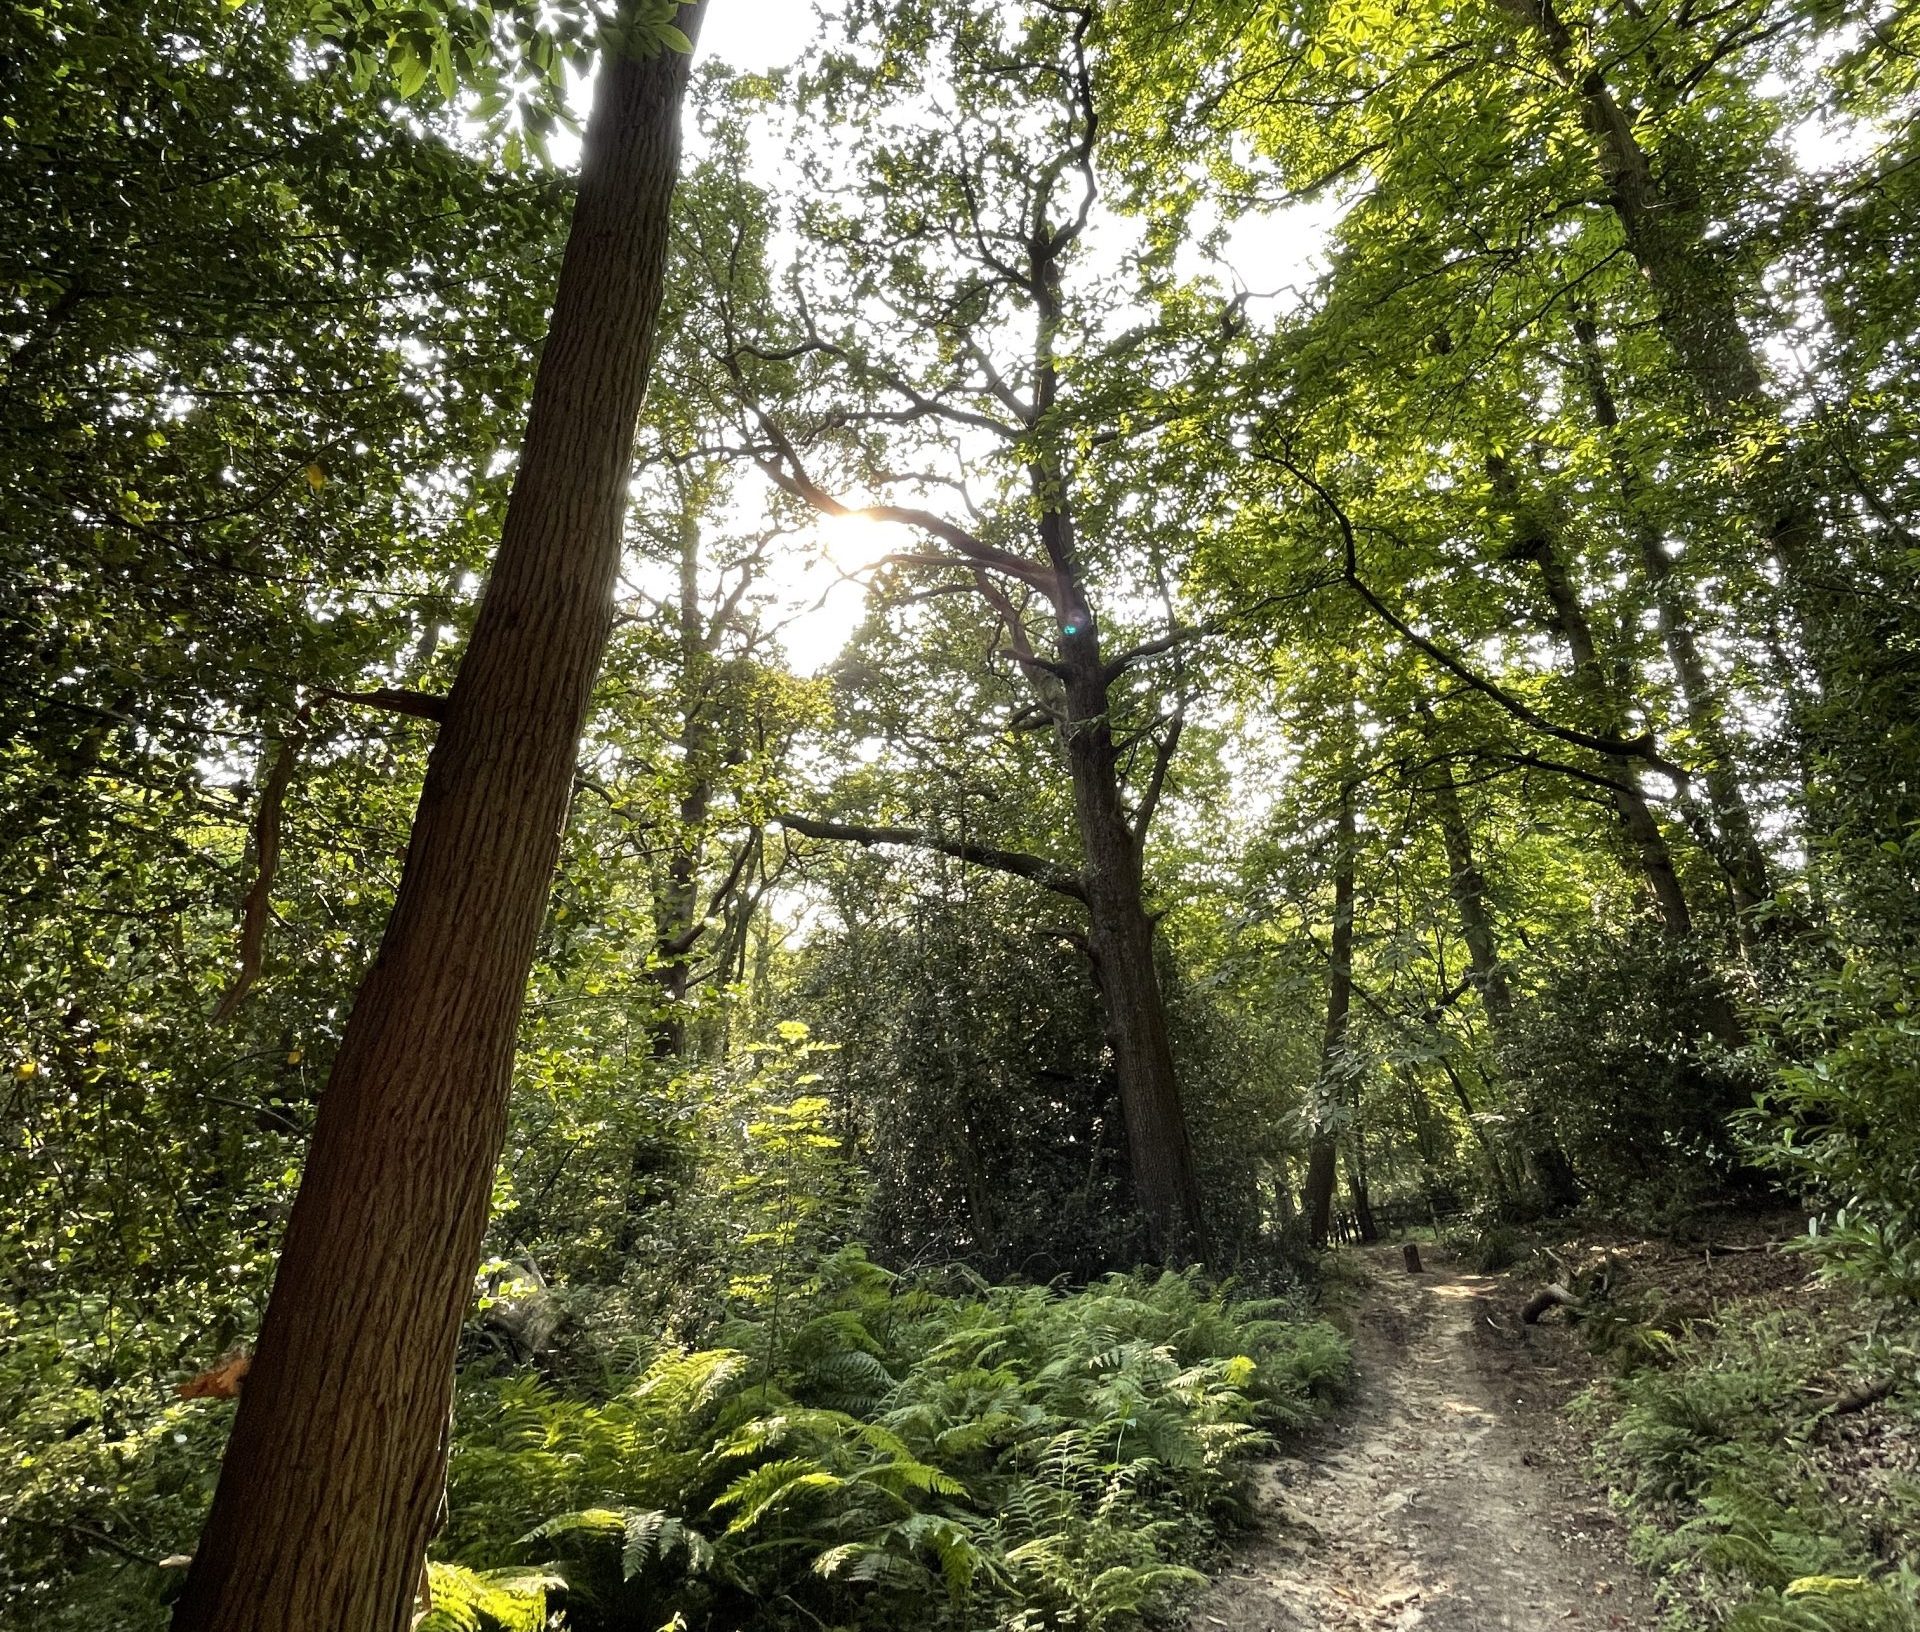 A path past a single tall tree amongst woodland greenery